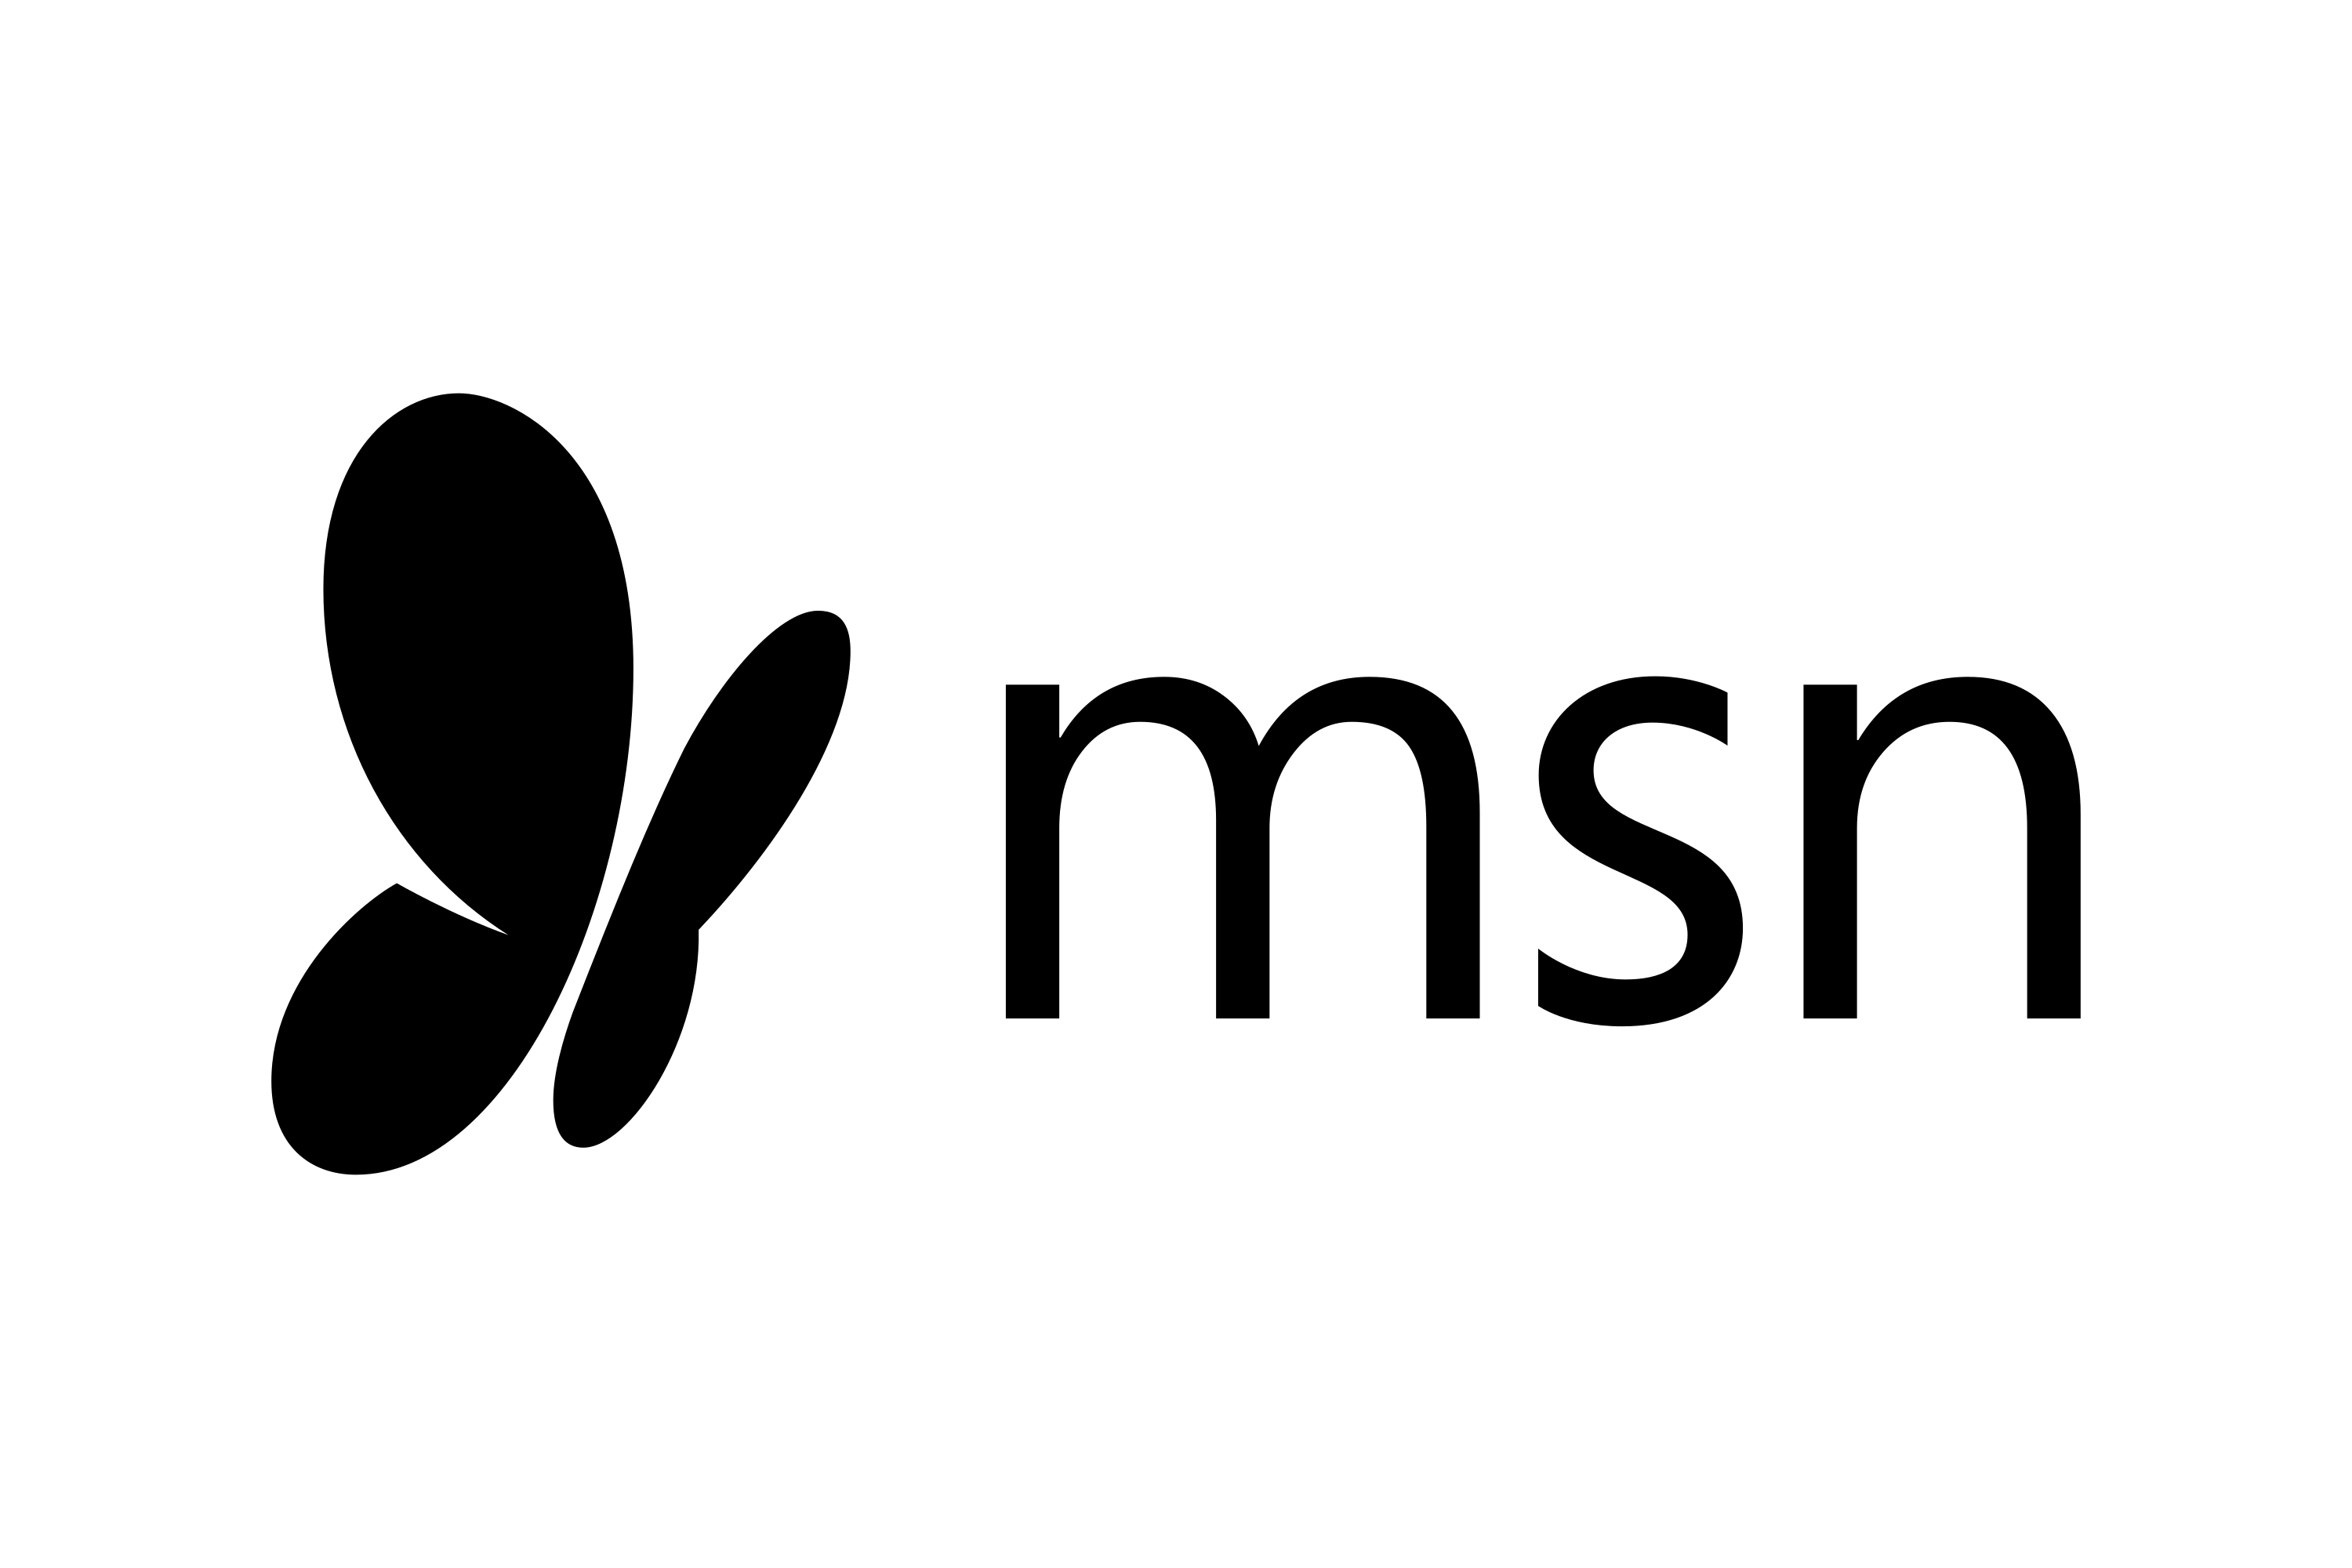 Download MSN Logo in SVG Vector or PNG File Format - Logo.wine